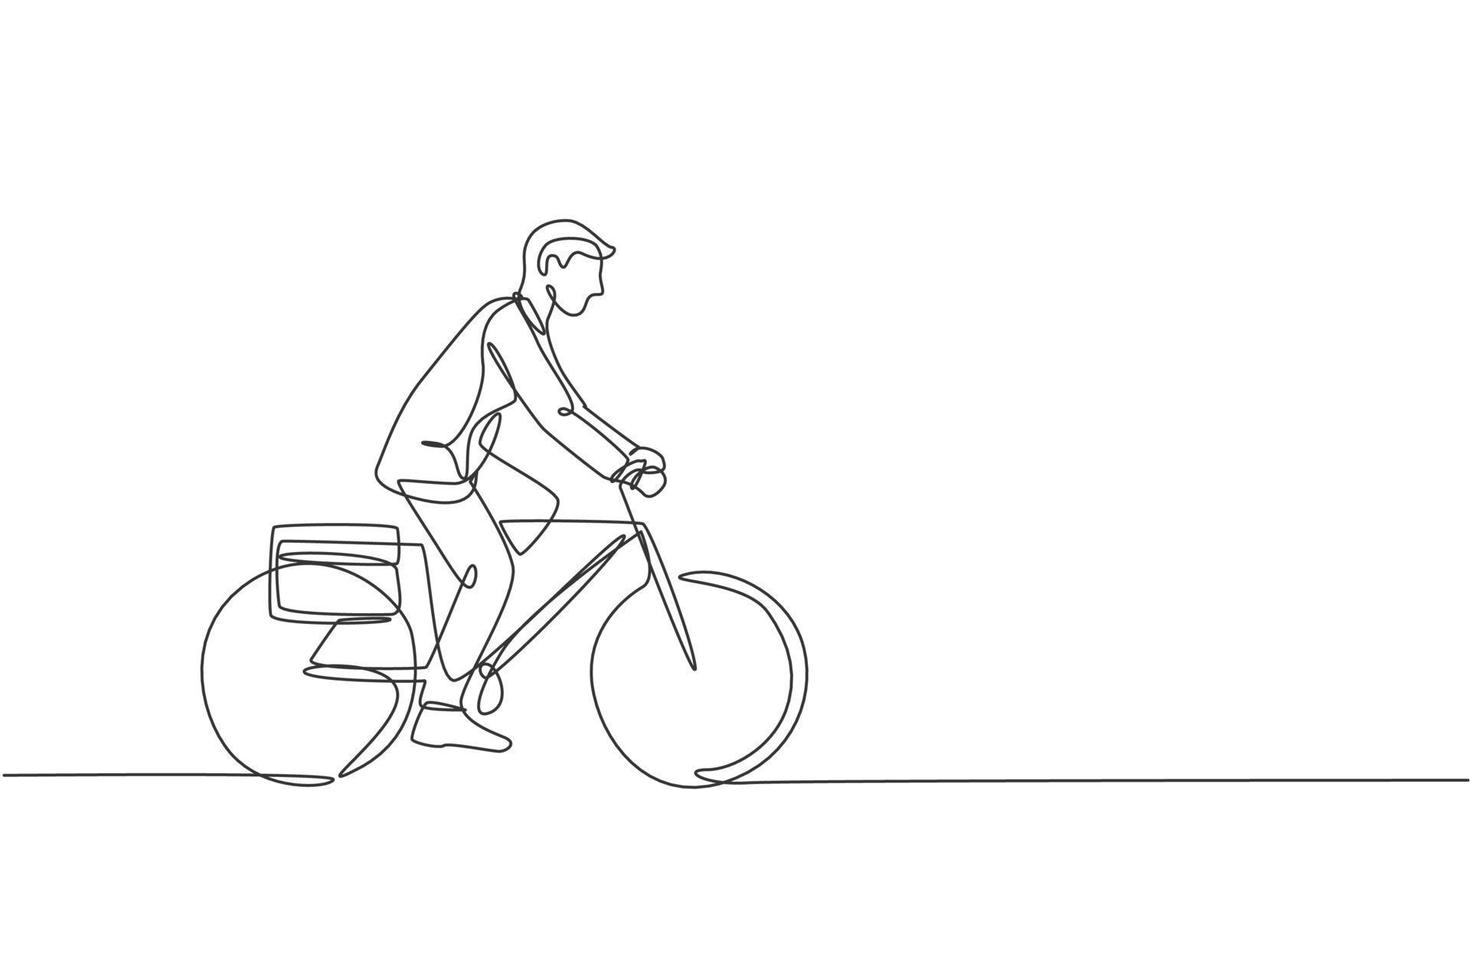 Eine einzige Strichzeichnung eines jungen, glücklichen, professionellen Startup-Mitarbeiters, der mit dem Fahrrad zur Coworking Space-Vektorillustration fährt. gesundes Pendler-Lifestyle-Konzept. modernes Design mit durchgehender Linie vektor